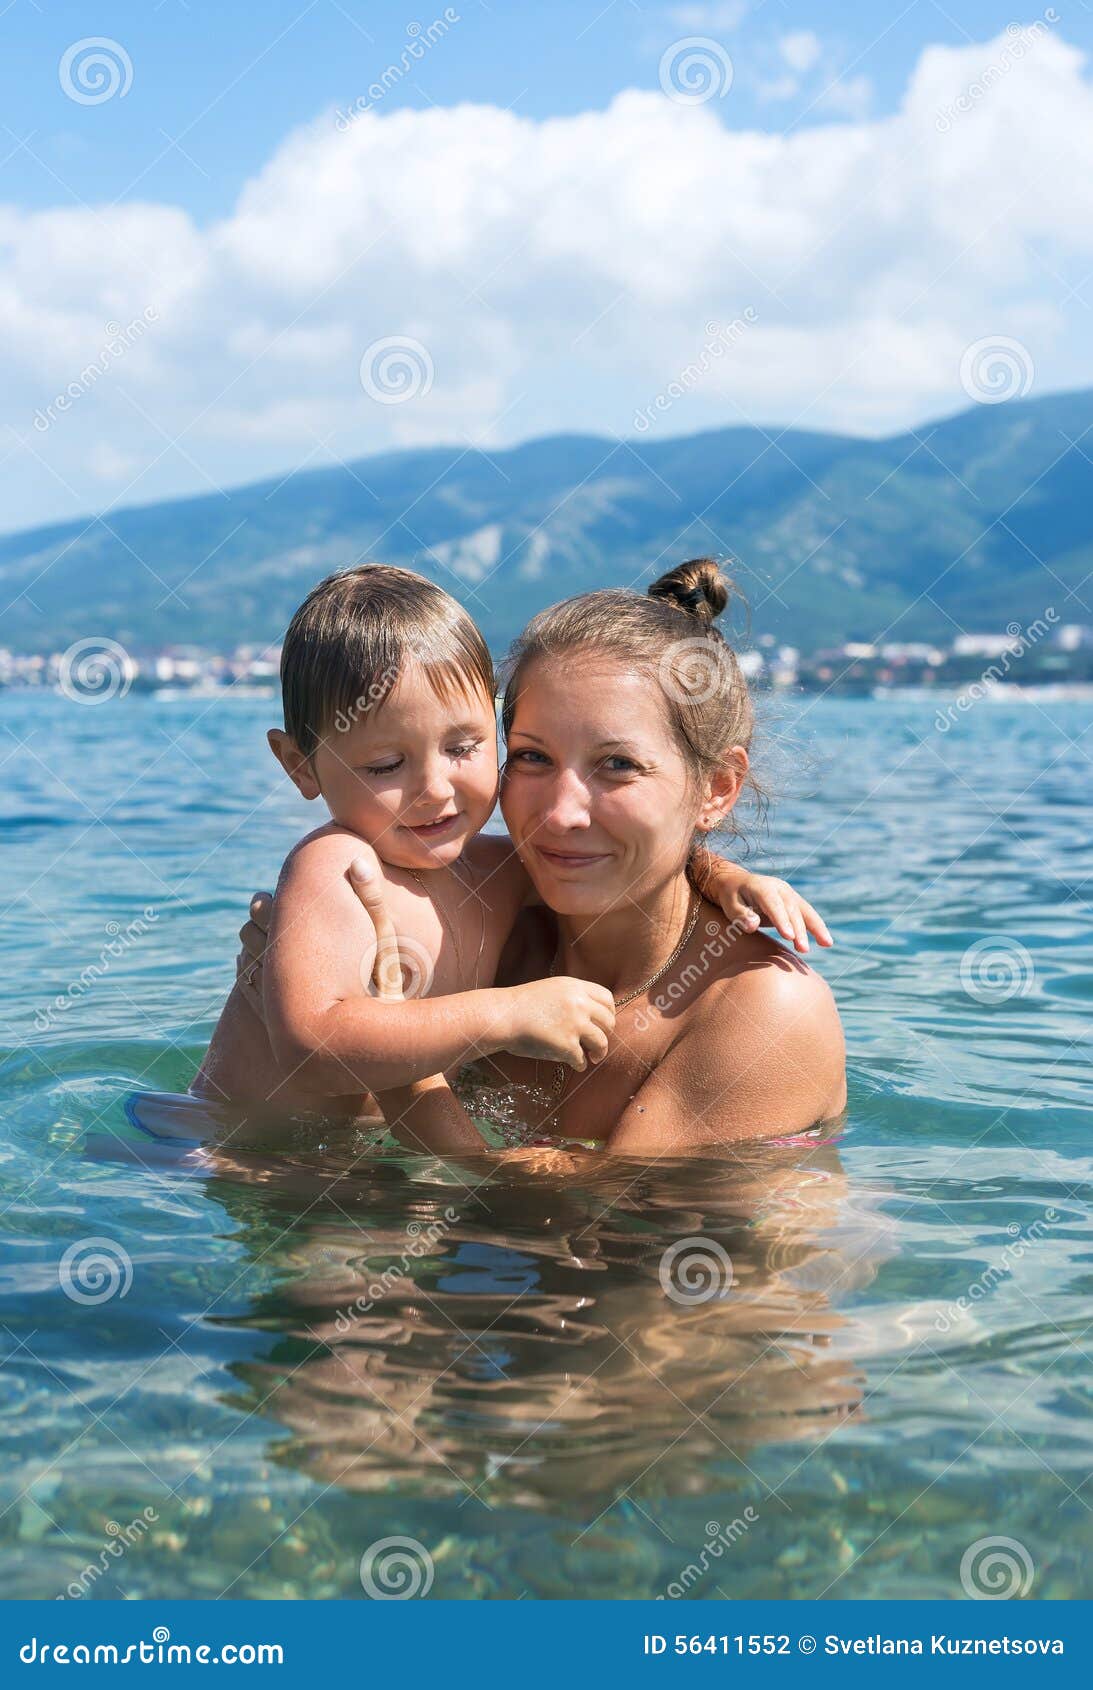 Сын купался в душе. Мама купается в море. Мама плавает в море. Совместное купание с мамой. Сын купается.